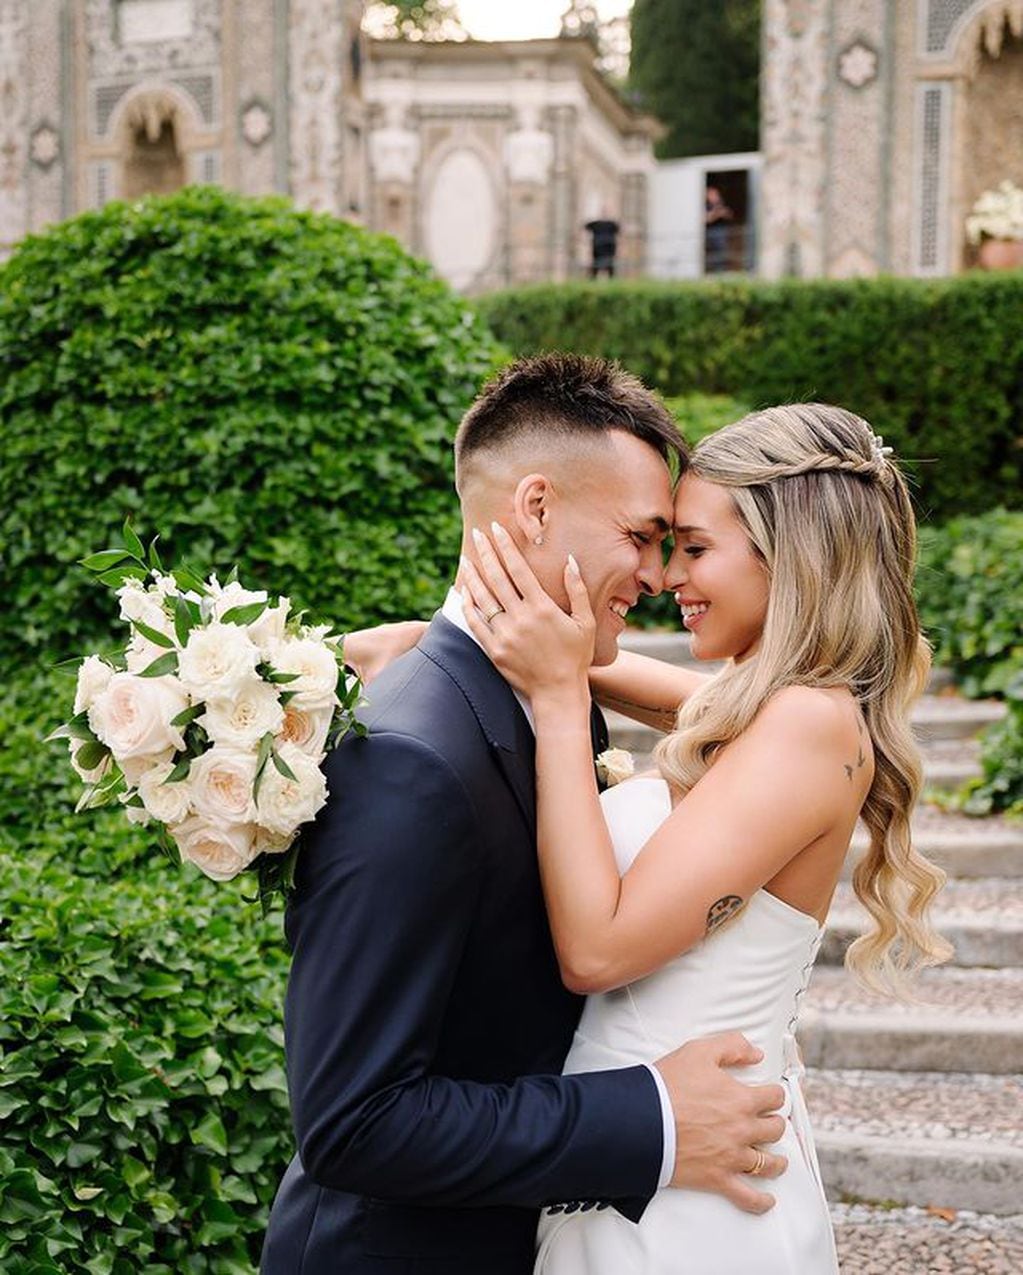 Las fotos del casamiento de Lautaro Martínez y Agustina Gandolfo. (Instagram Agustina Gandolfo)